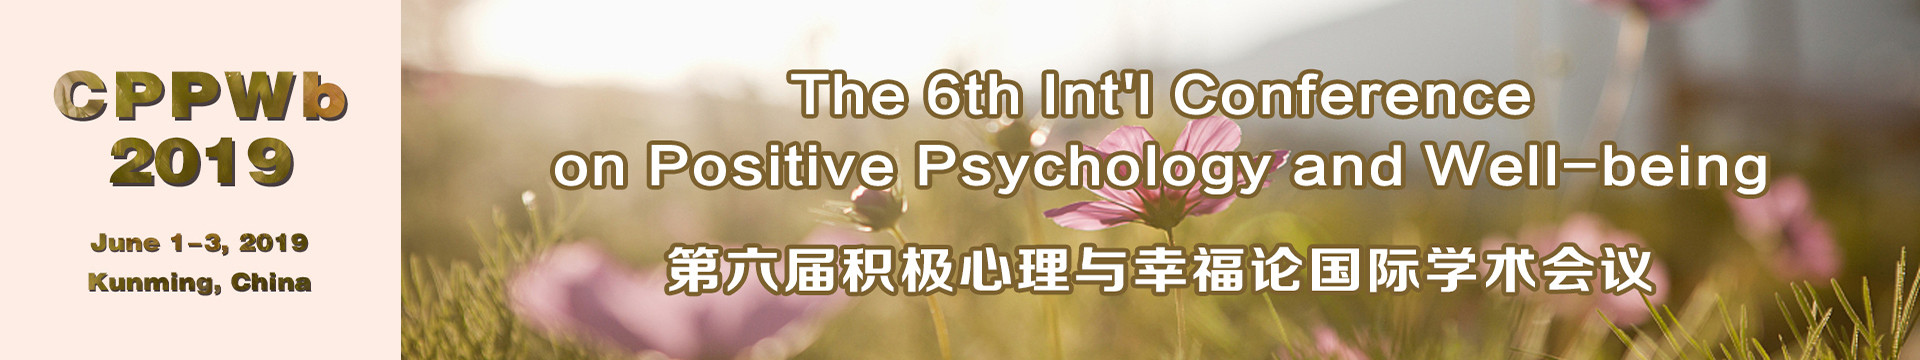 第六届积极心理与幸福论国际学术会议